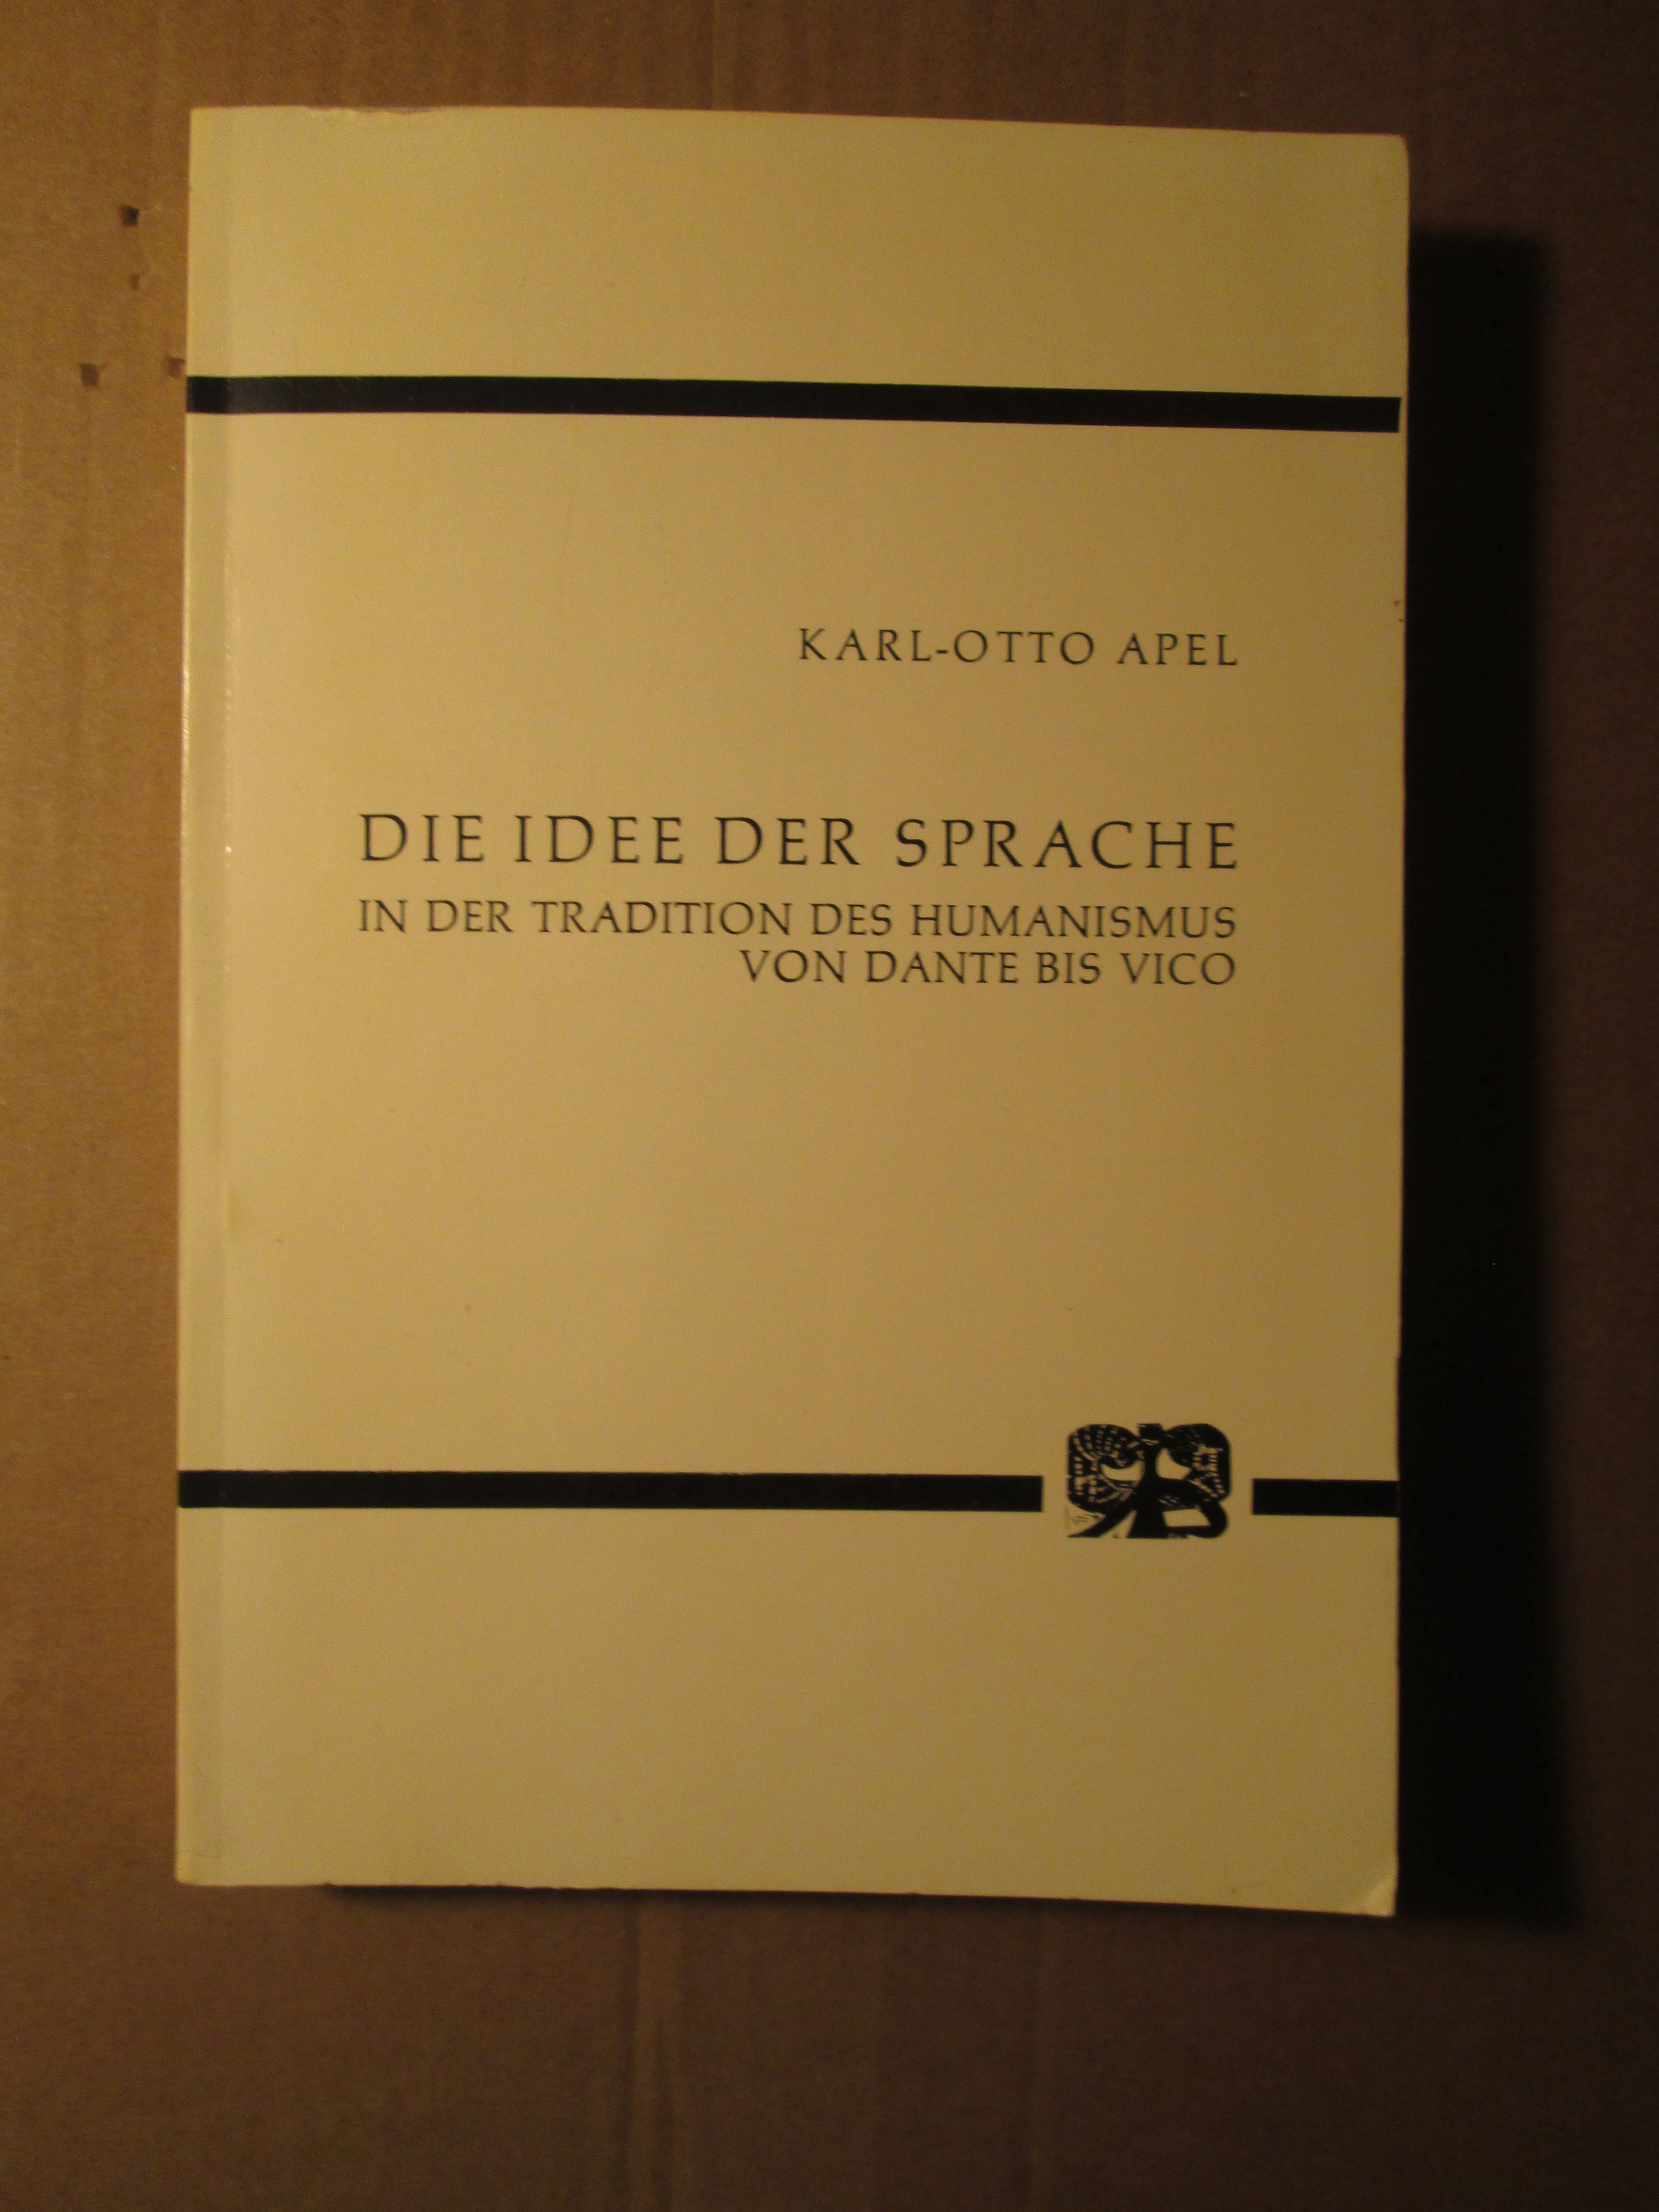 Die Idee der Sprache in der Tradition des Humanismus von Dante bis Vico - Apel, Karl-Otto